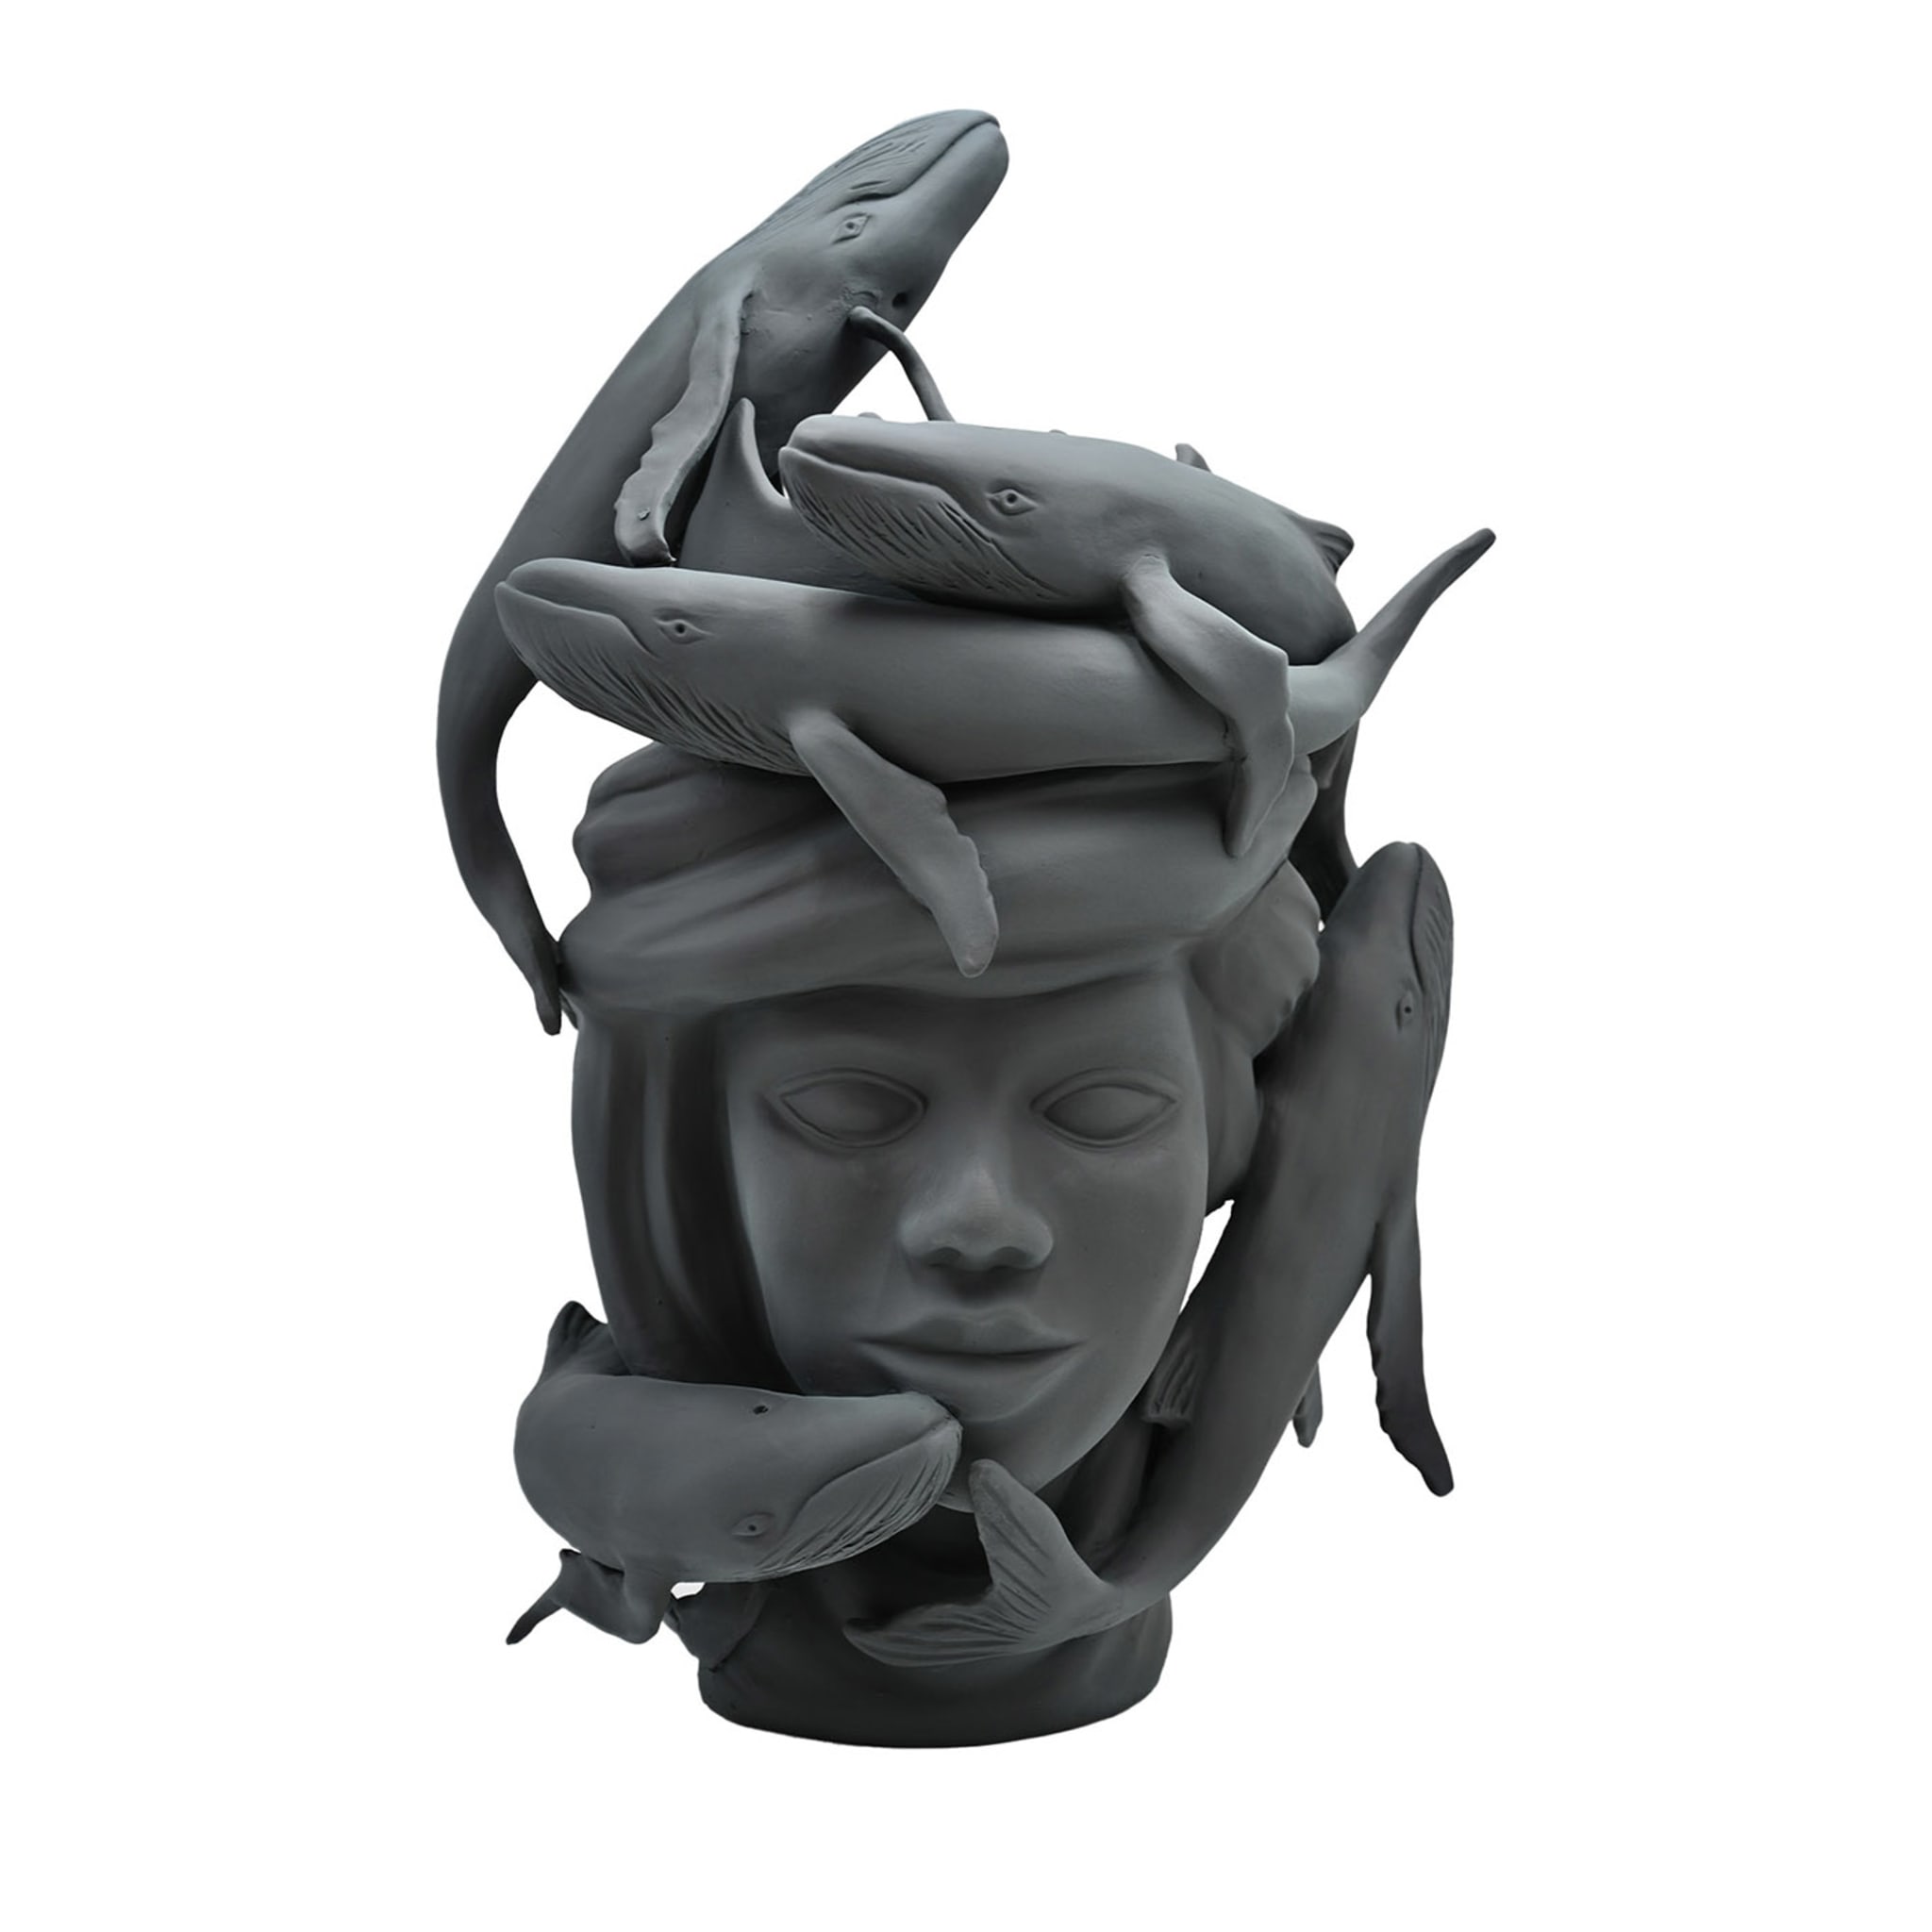 Moor's Head Sculpture in Charcoal Grey